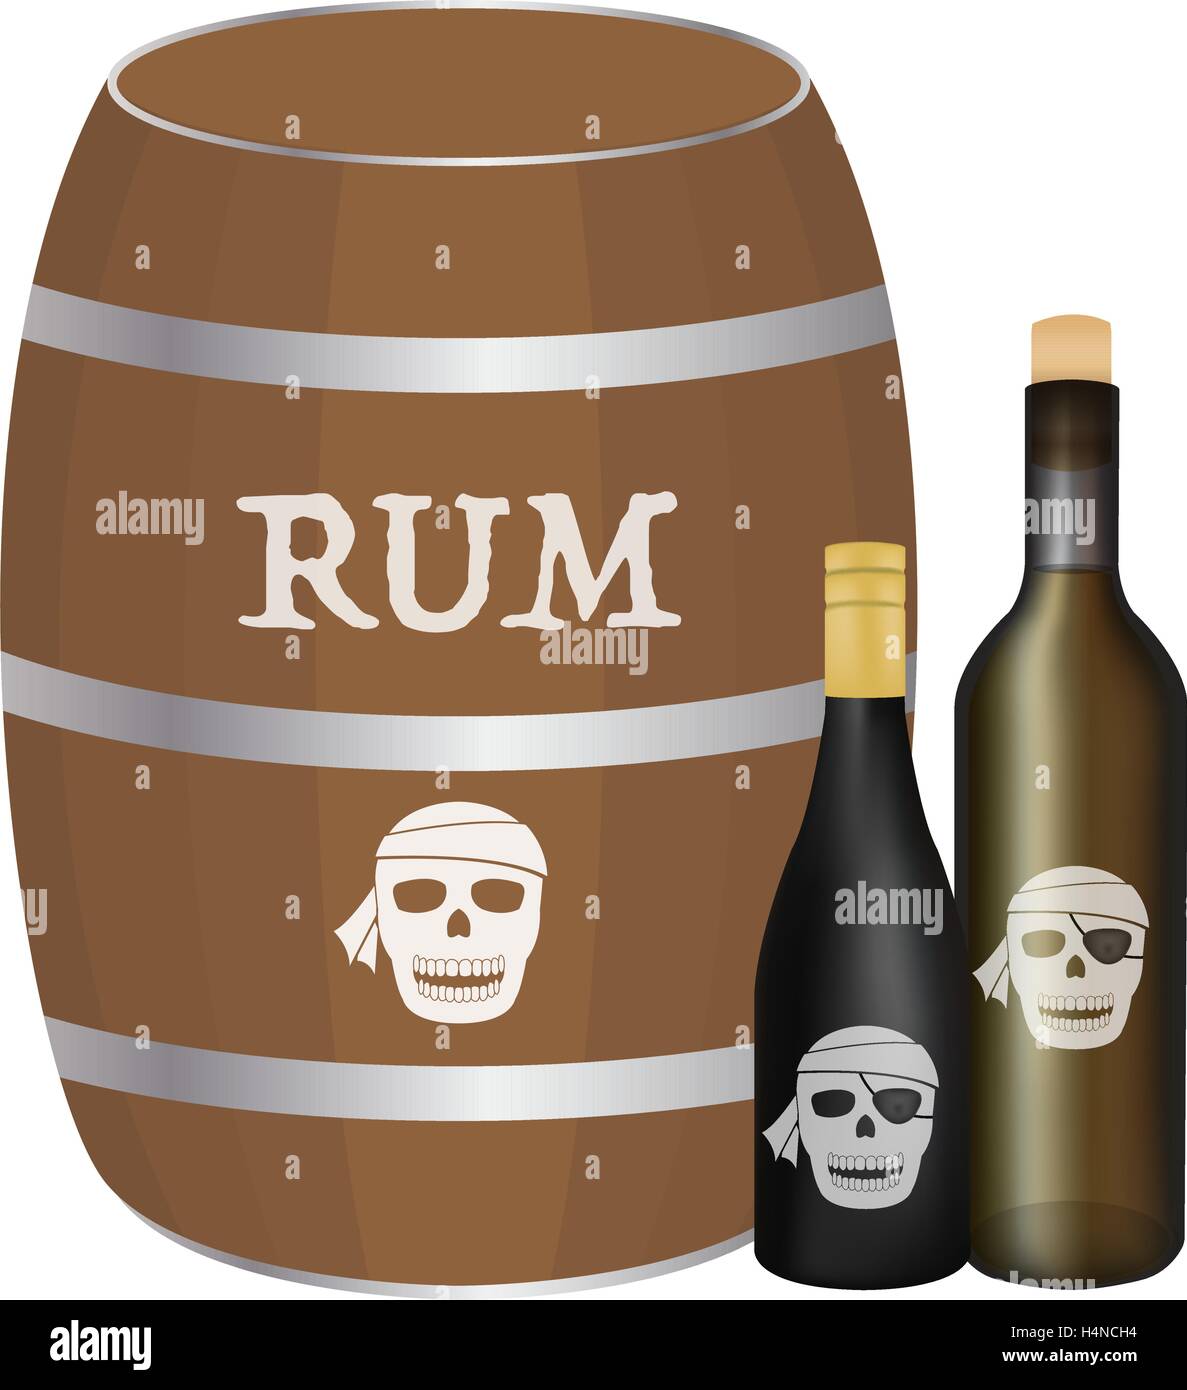 Rum di canna e bottiglia di rum Immagine e Vettoriale - Alamy